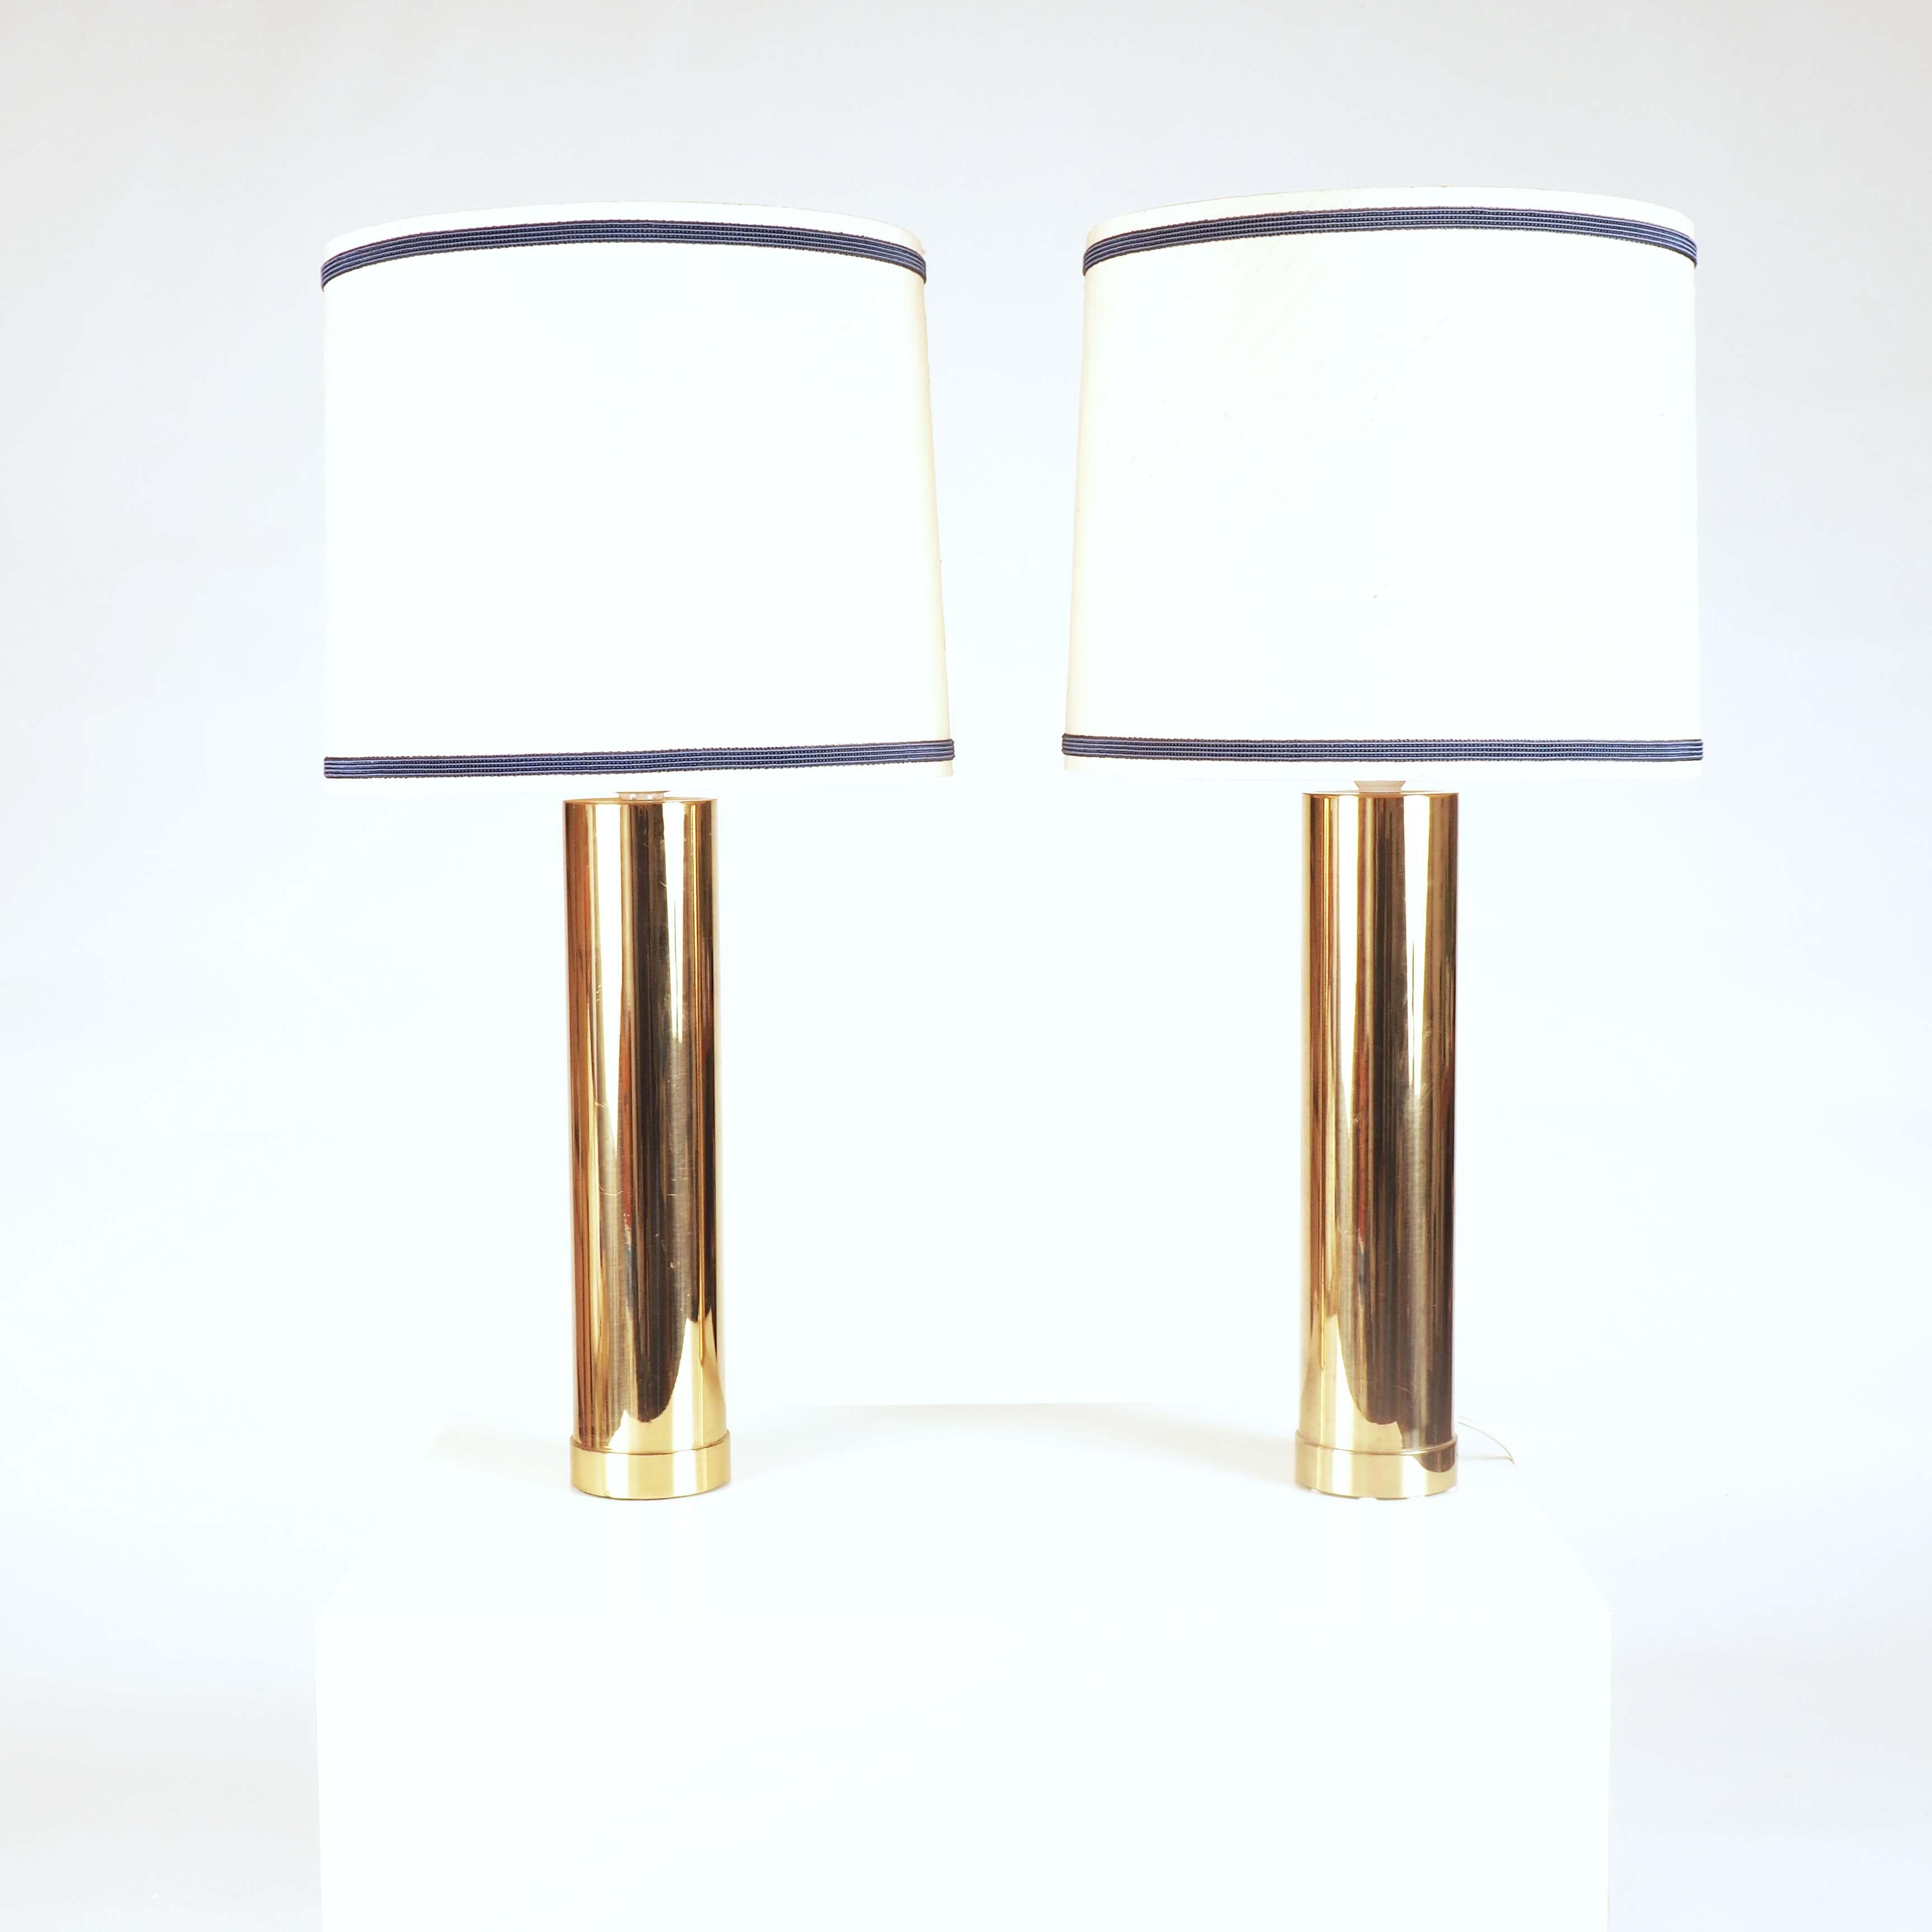 Stricte et moderne, cette paire de lampes de table a été fabriquée dans les années soixante par le fabricant de lampes suédois Bergboms. La base en laiton et le poids en fer sont très lourds, ce qui donne une sensation de qualité dans la main.